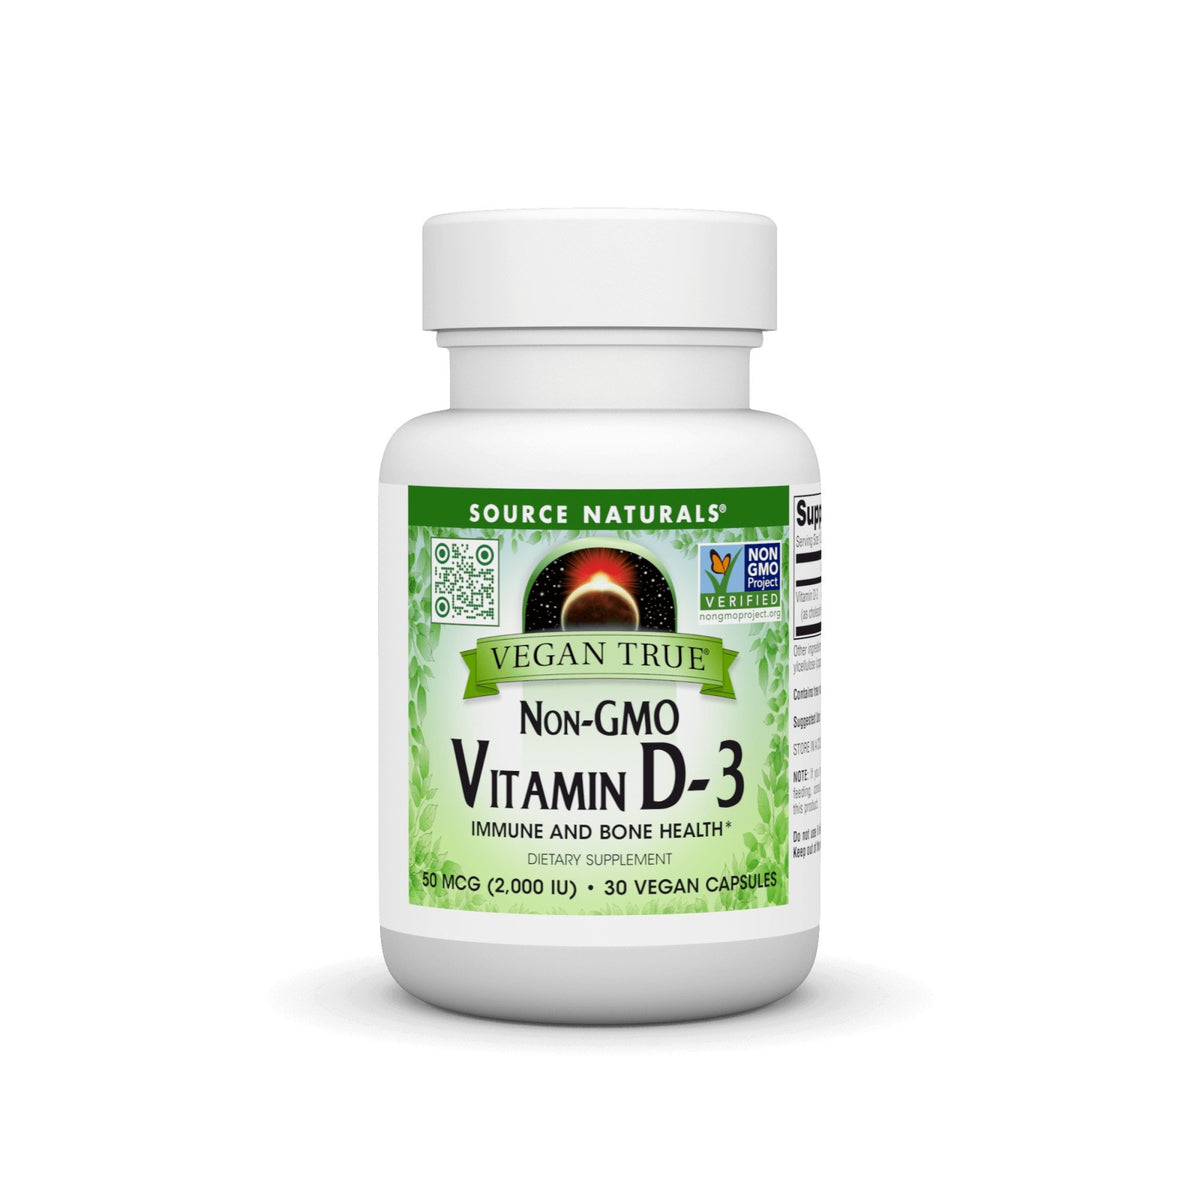 Source Naturals, Inc. Vegan True Non-GMO Vitamin D-3 2,000 IU 30 VegCap